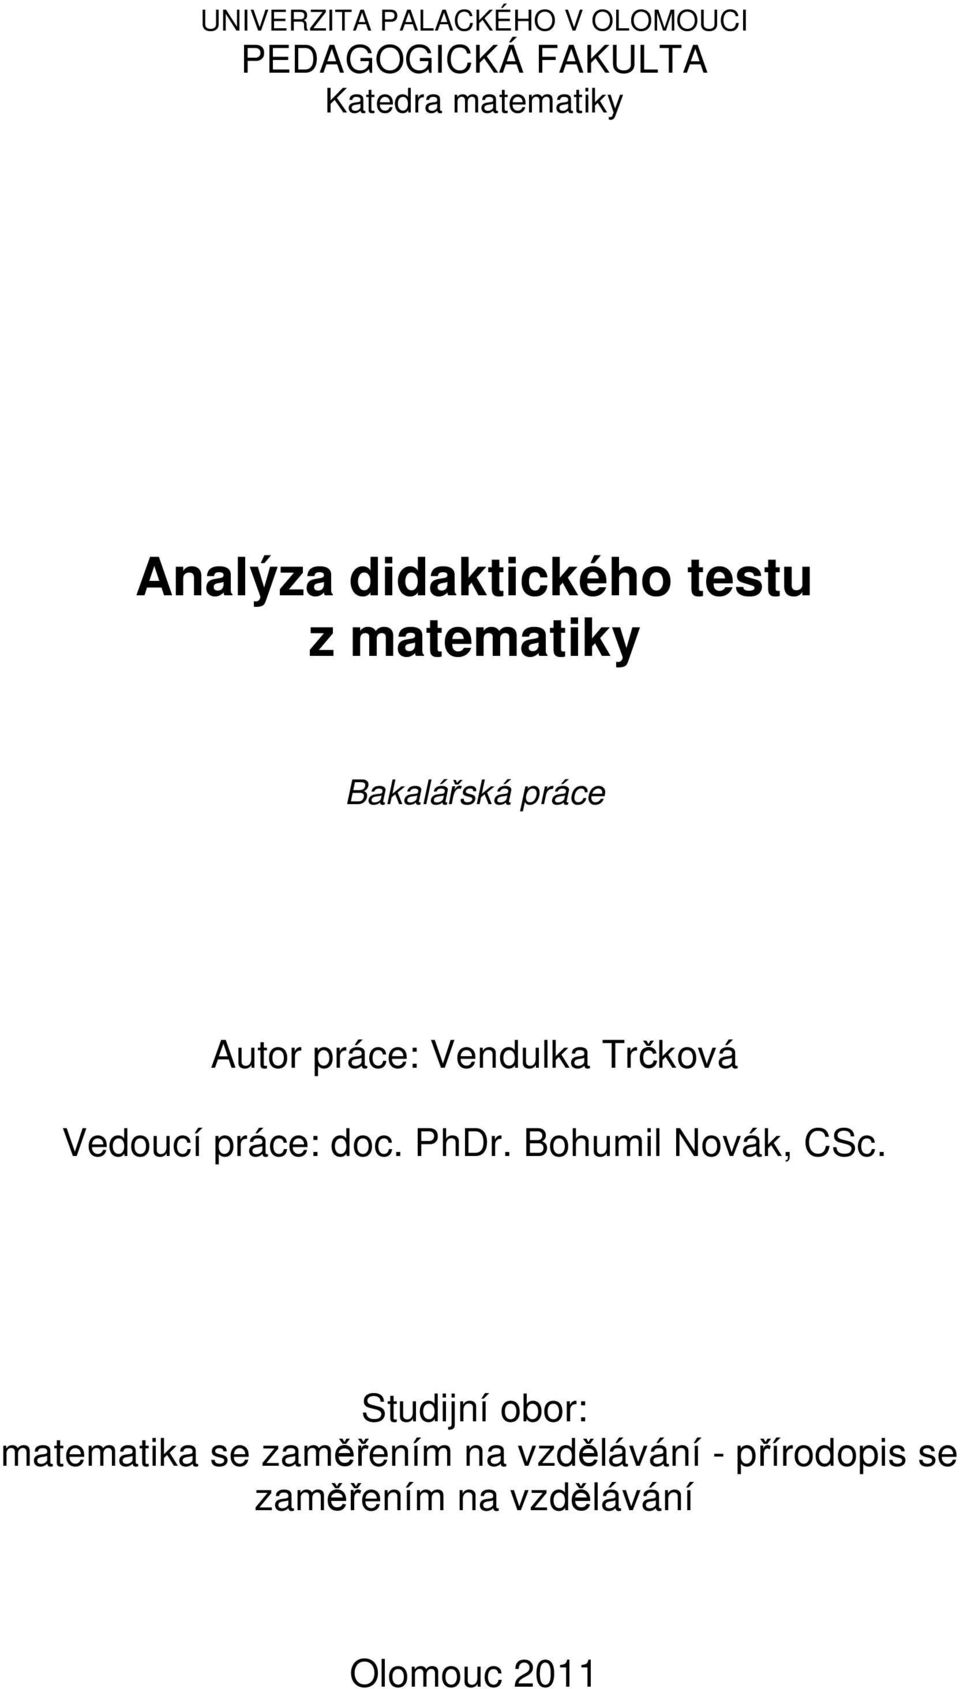 Vendulka Trčková Vedoucí práce: doc. PhDr. Bohumil Novák, CSc.